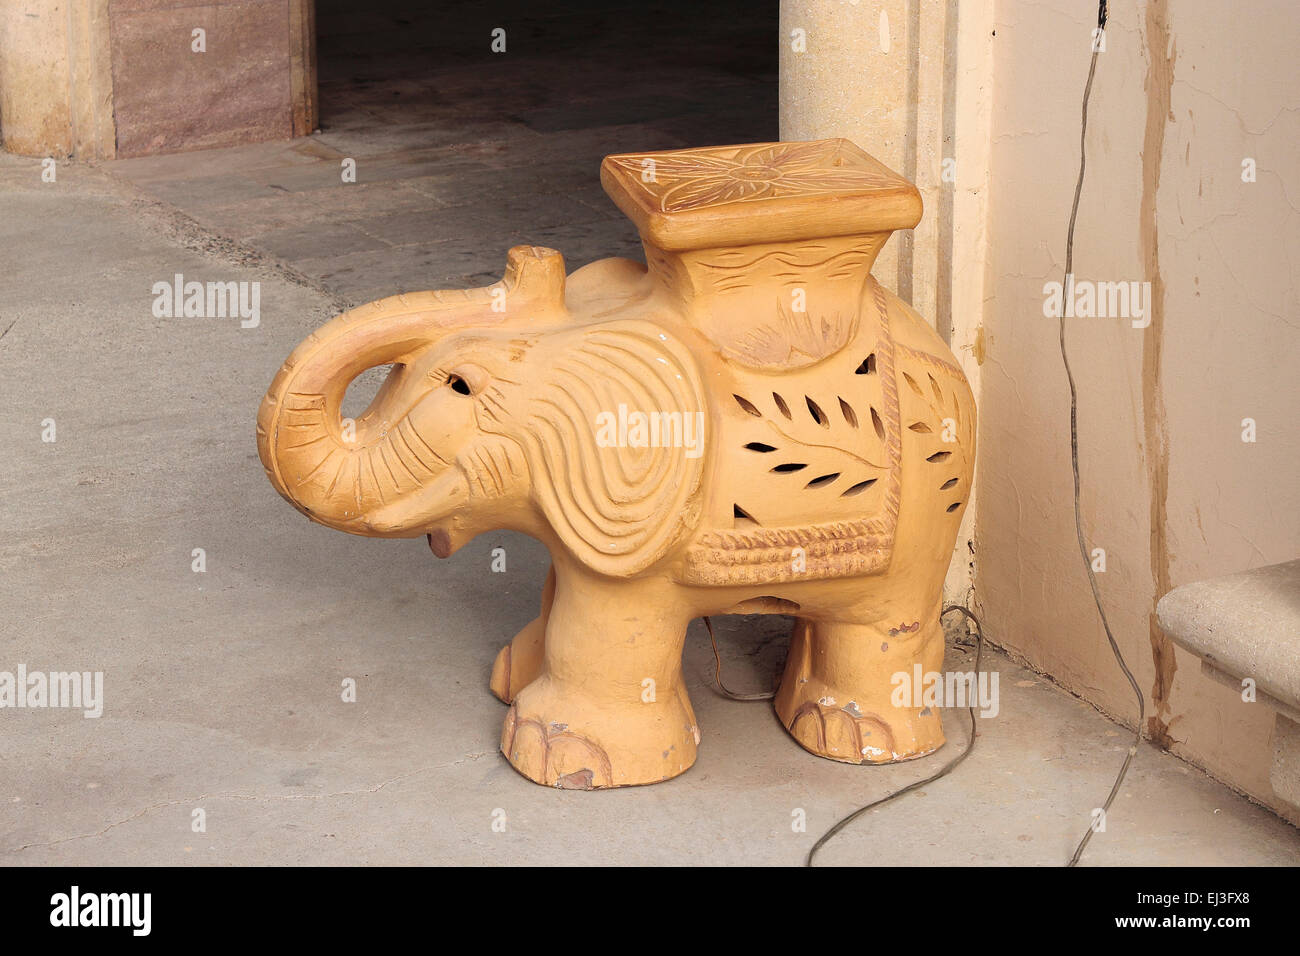 Terracotta Ornamental Elephant Light outside a restaurant in Egypt Stock Photo